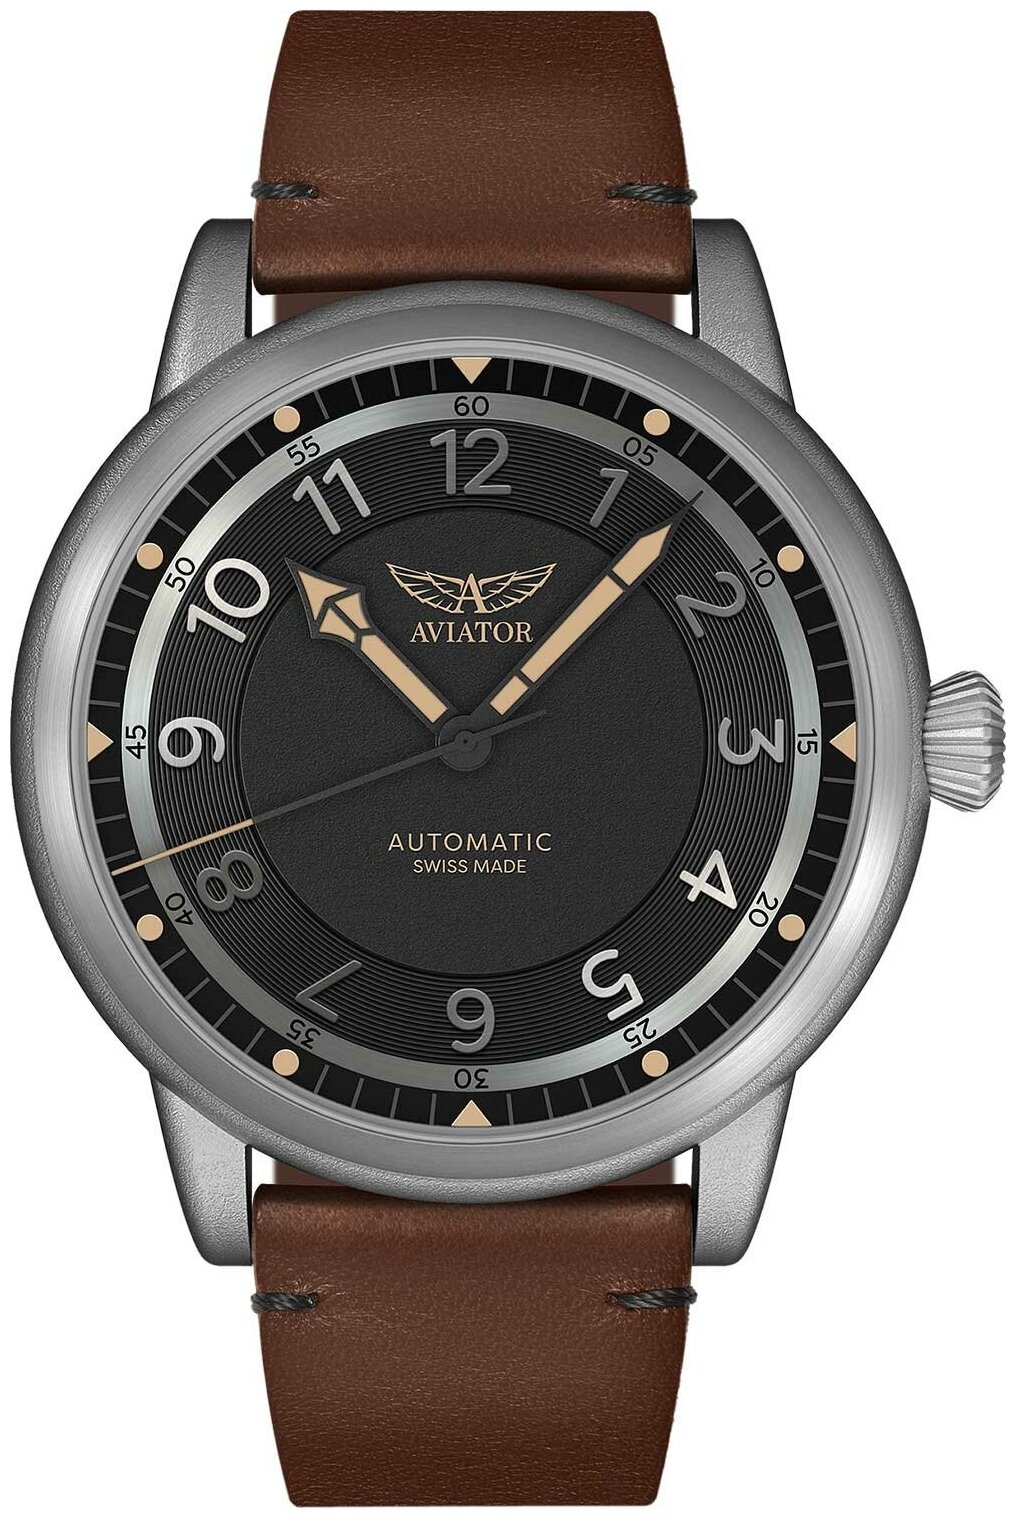 Наручные часы Aviator Наручные часы Aviator V.3.31.0.228.4, коричневый, черный — купить в интернет-магазине по низкой цене на Яндекс Маркете